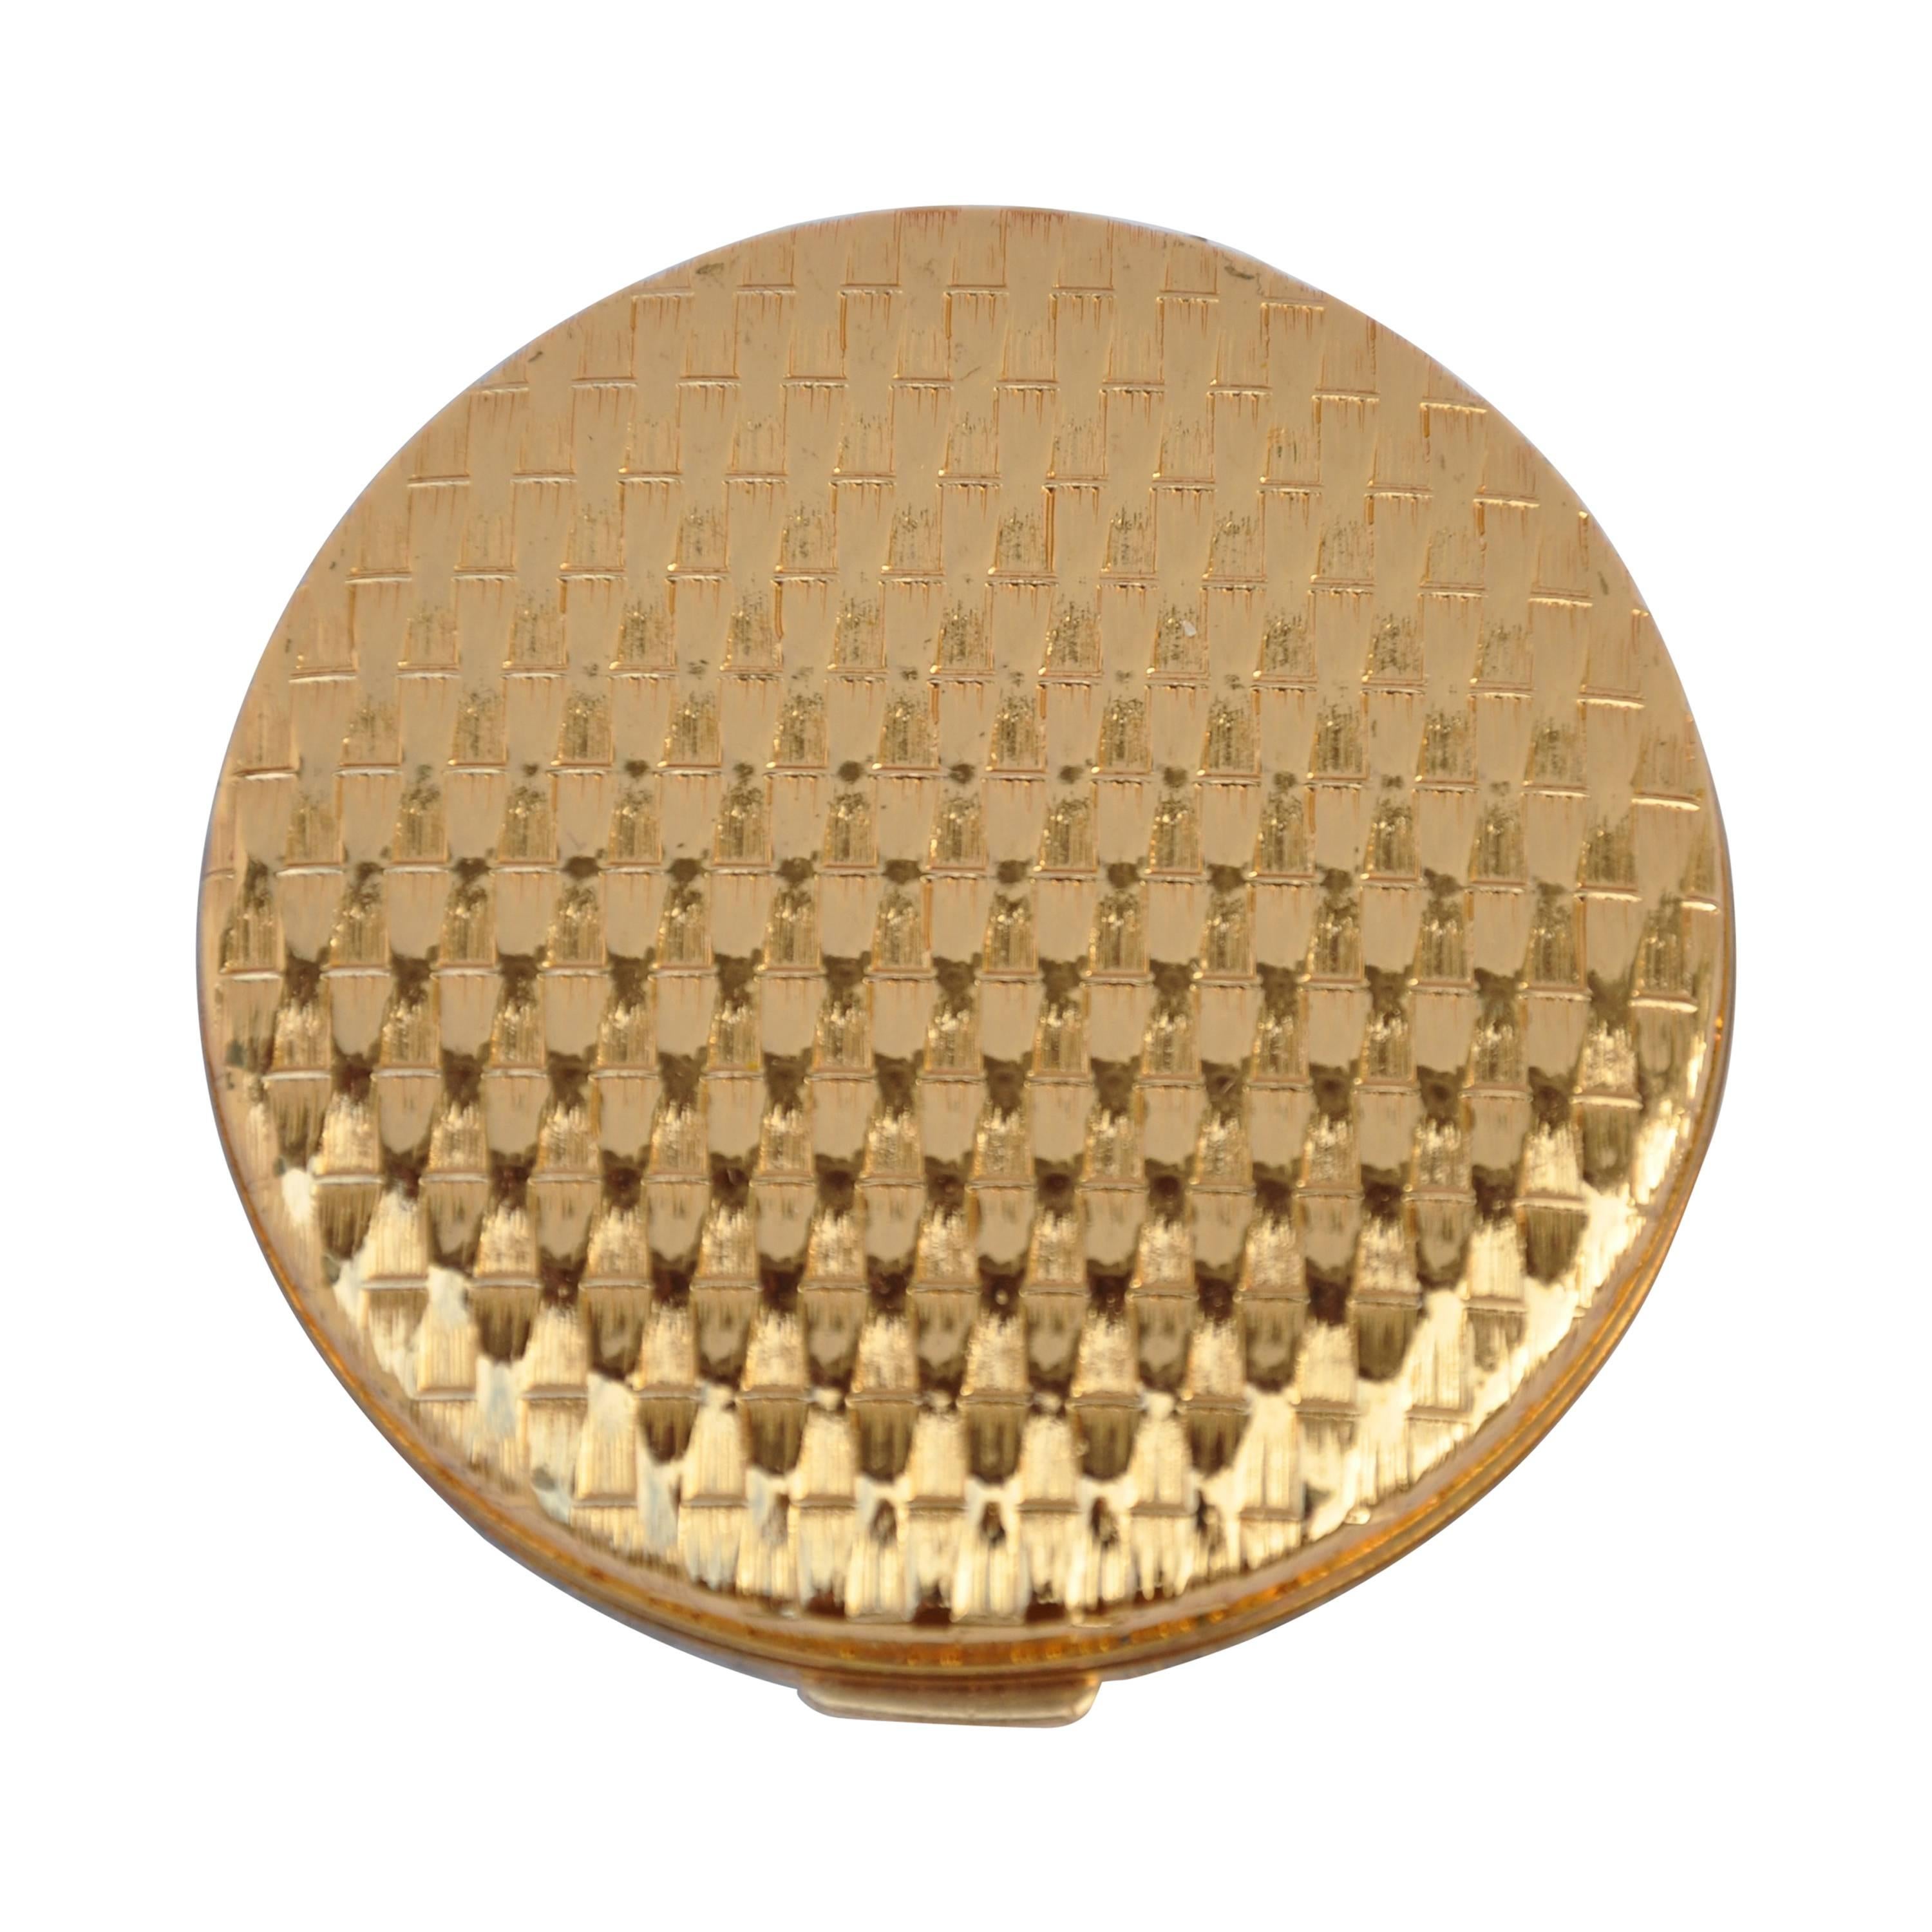 Elizabeth Arden Gilded Gold "Basket Weave" Compact